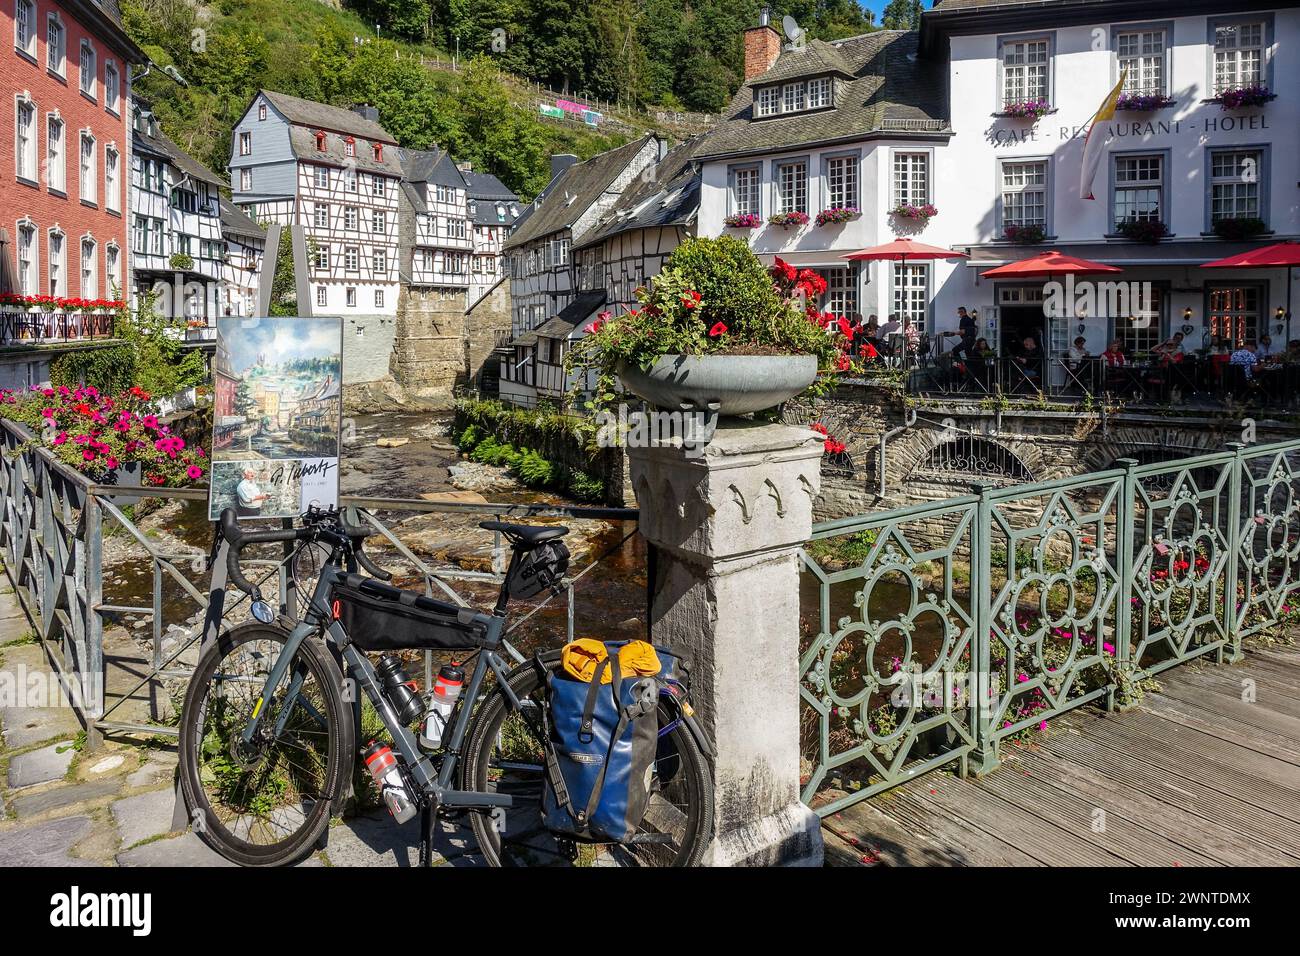 Vélo de gravier dans un village européen pittoresque (Monschau, Allemagne) avec des maisons à colombages et un pont fleuri sur un ruisseau Banque D'Images